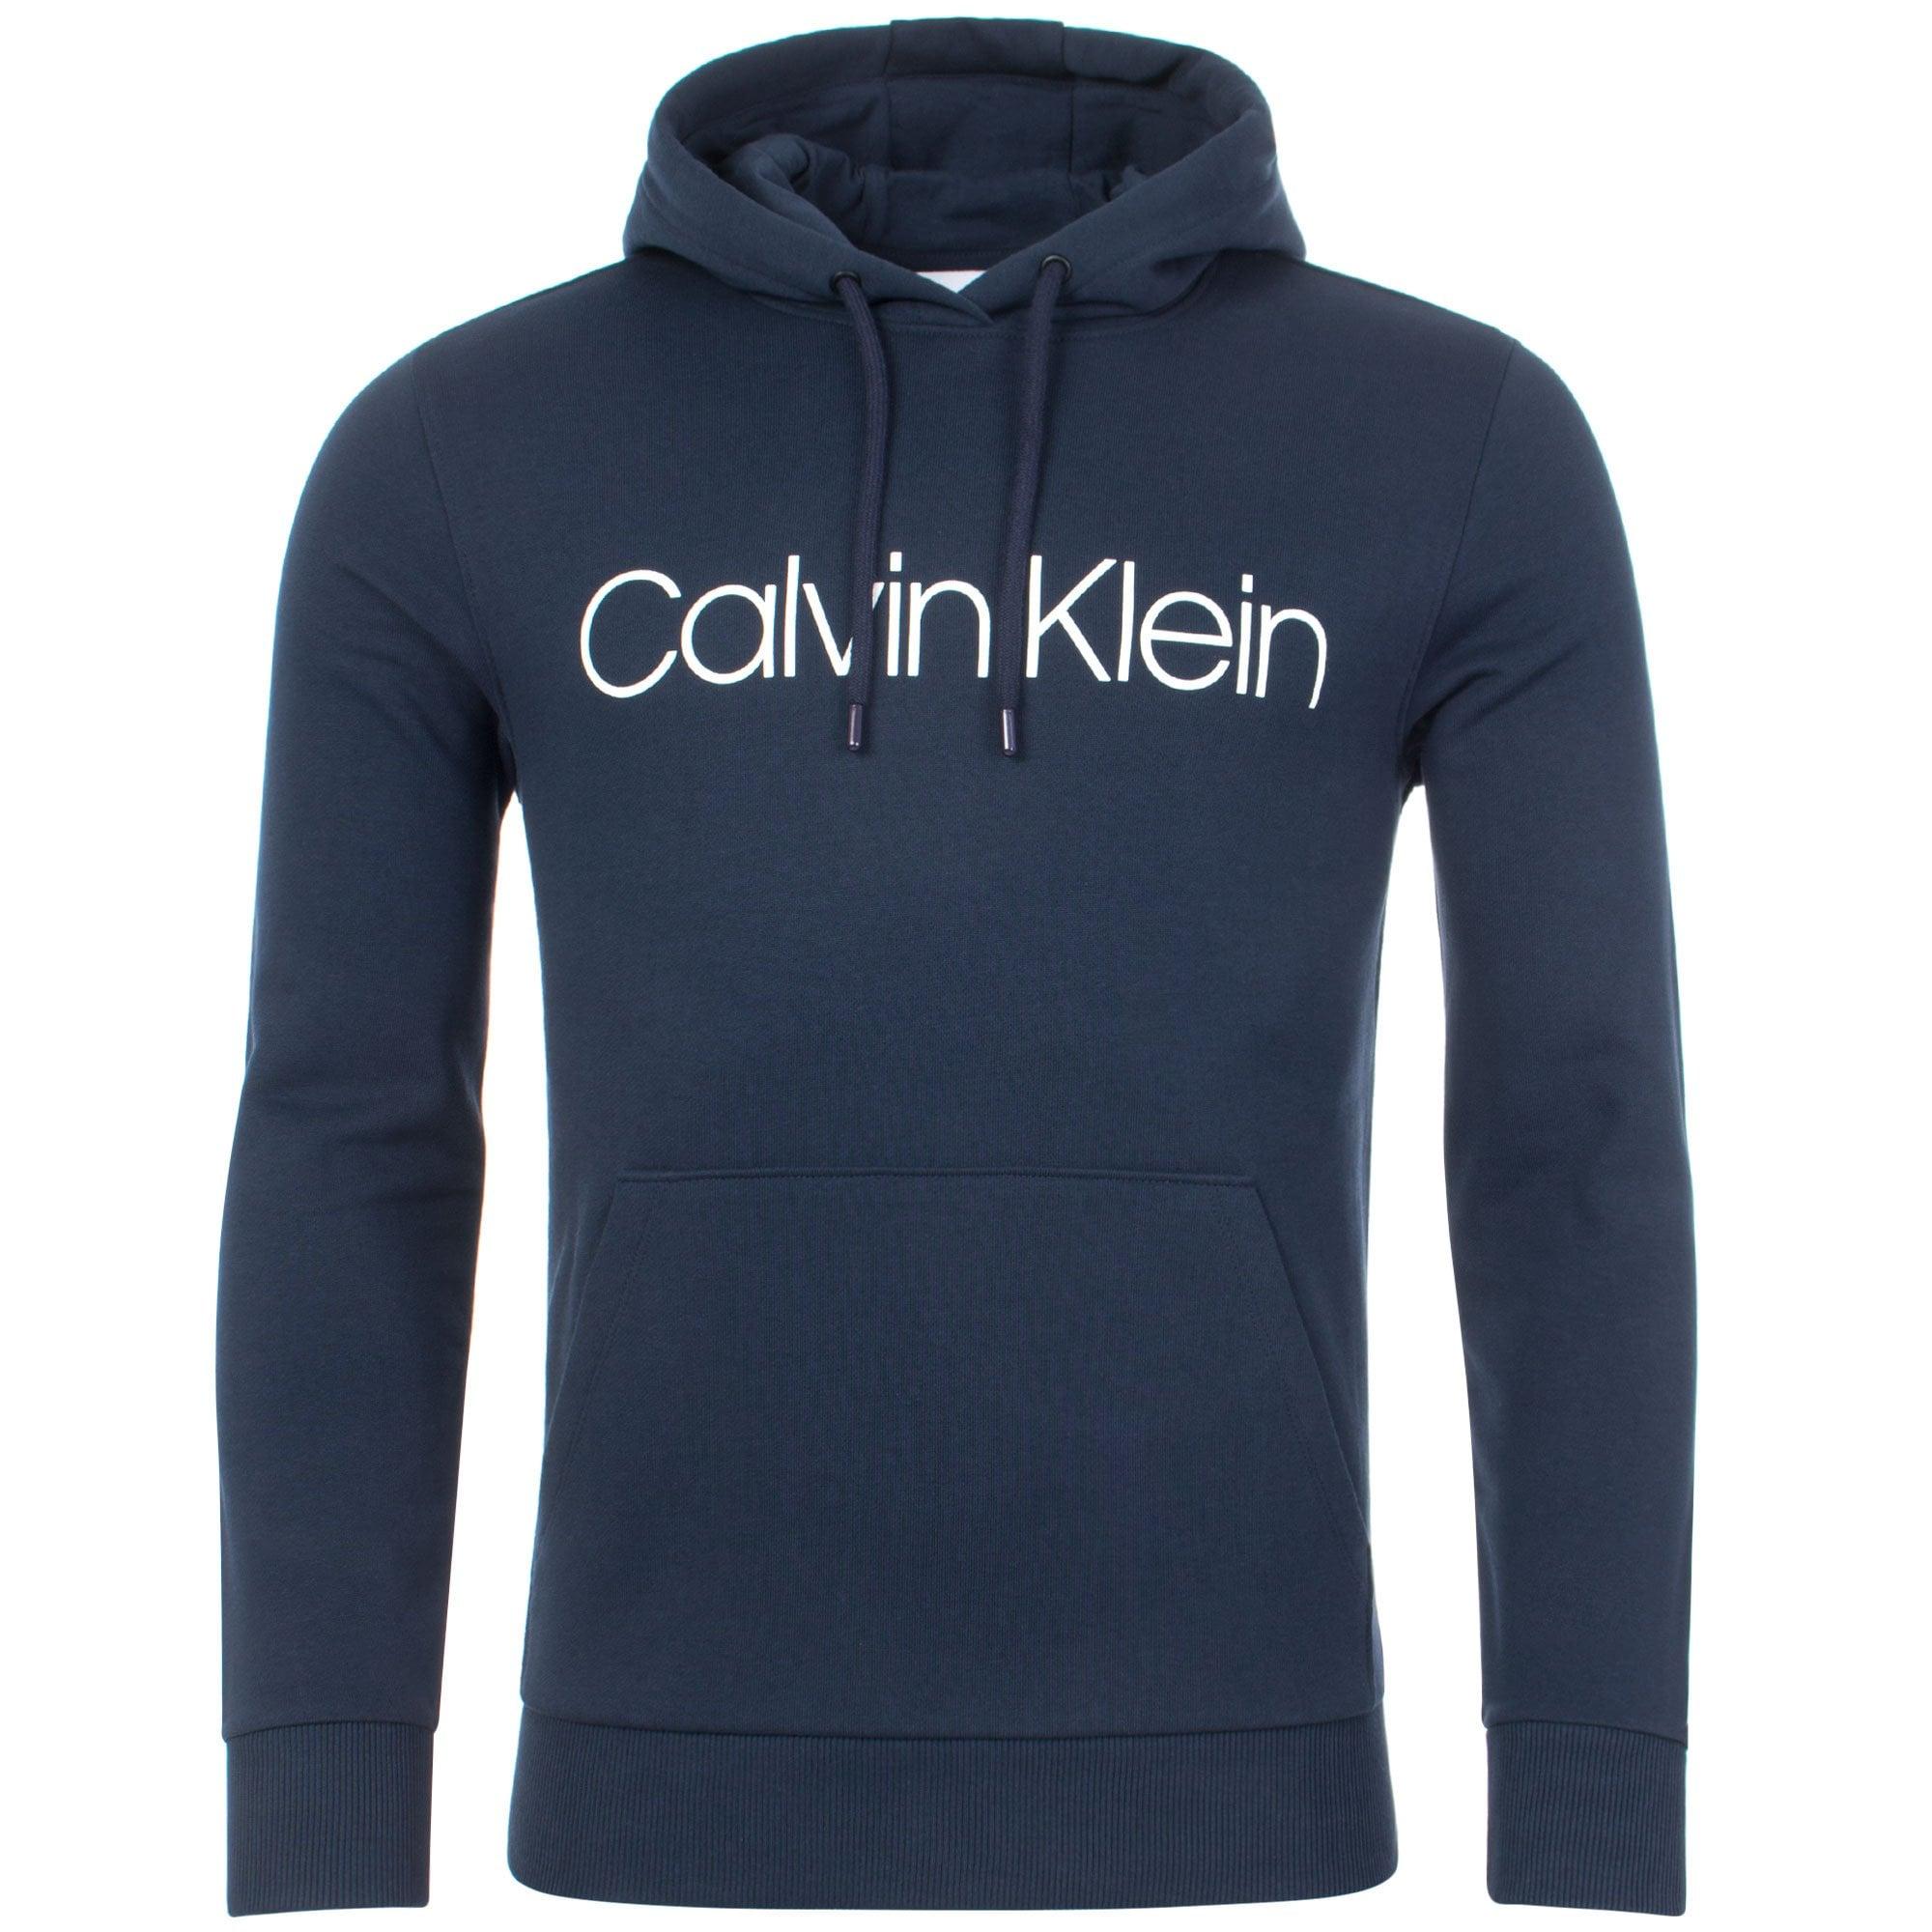 Calvin Klein Cotton Logo Hoodie in Blue for Men - Lyst